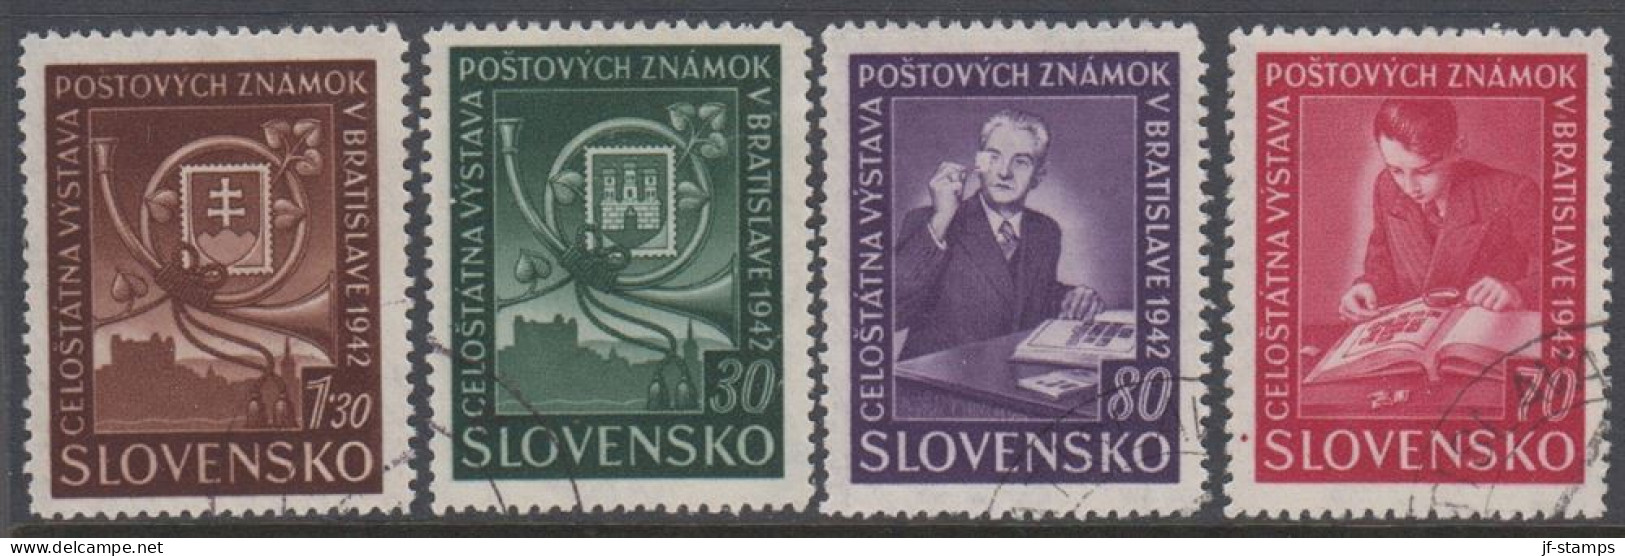 1942. SLOVENSKO Stamp Show. Complete Set Of 4 Stamps.  (Michel 98-101) - JF418428 - Usados